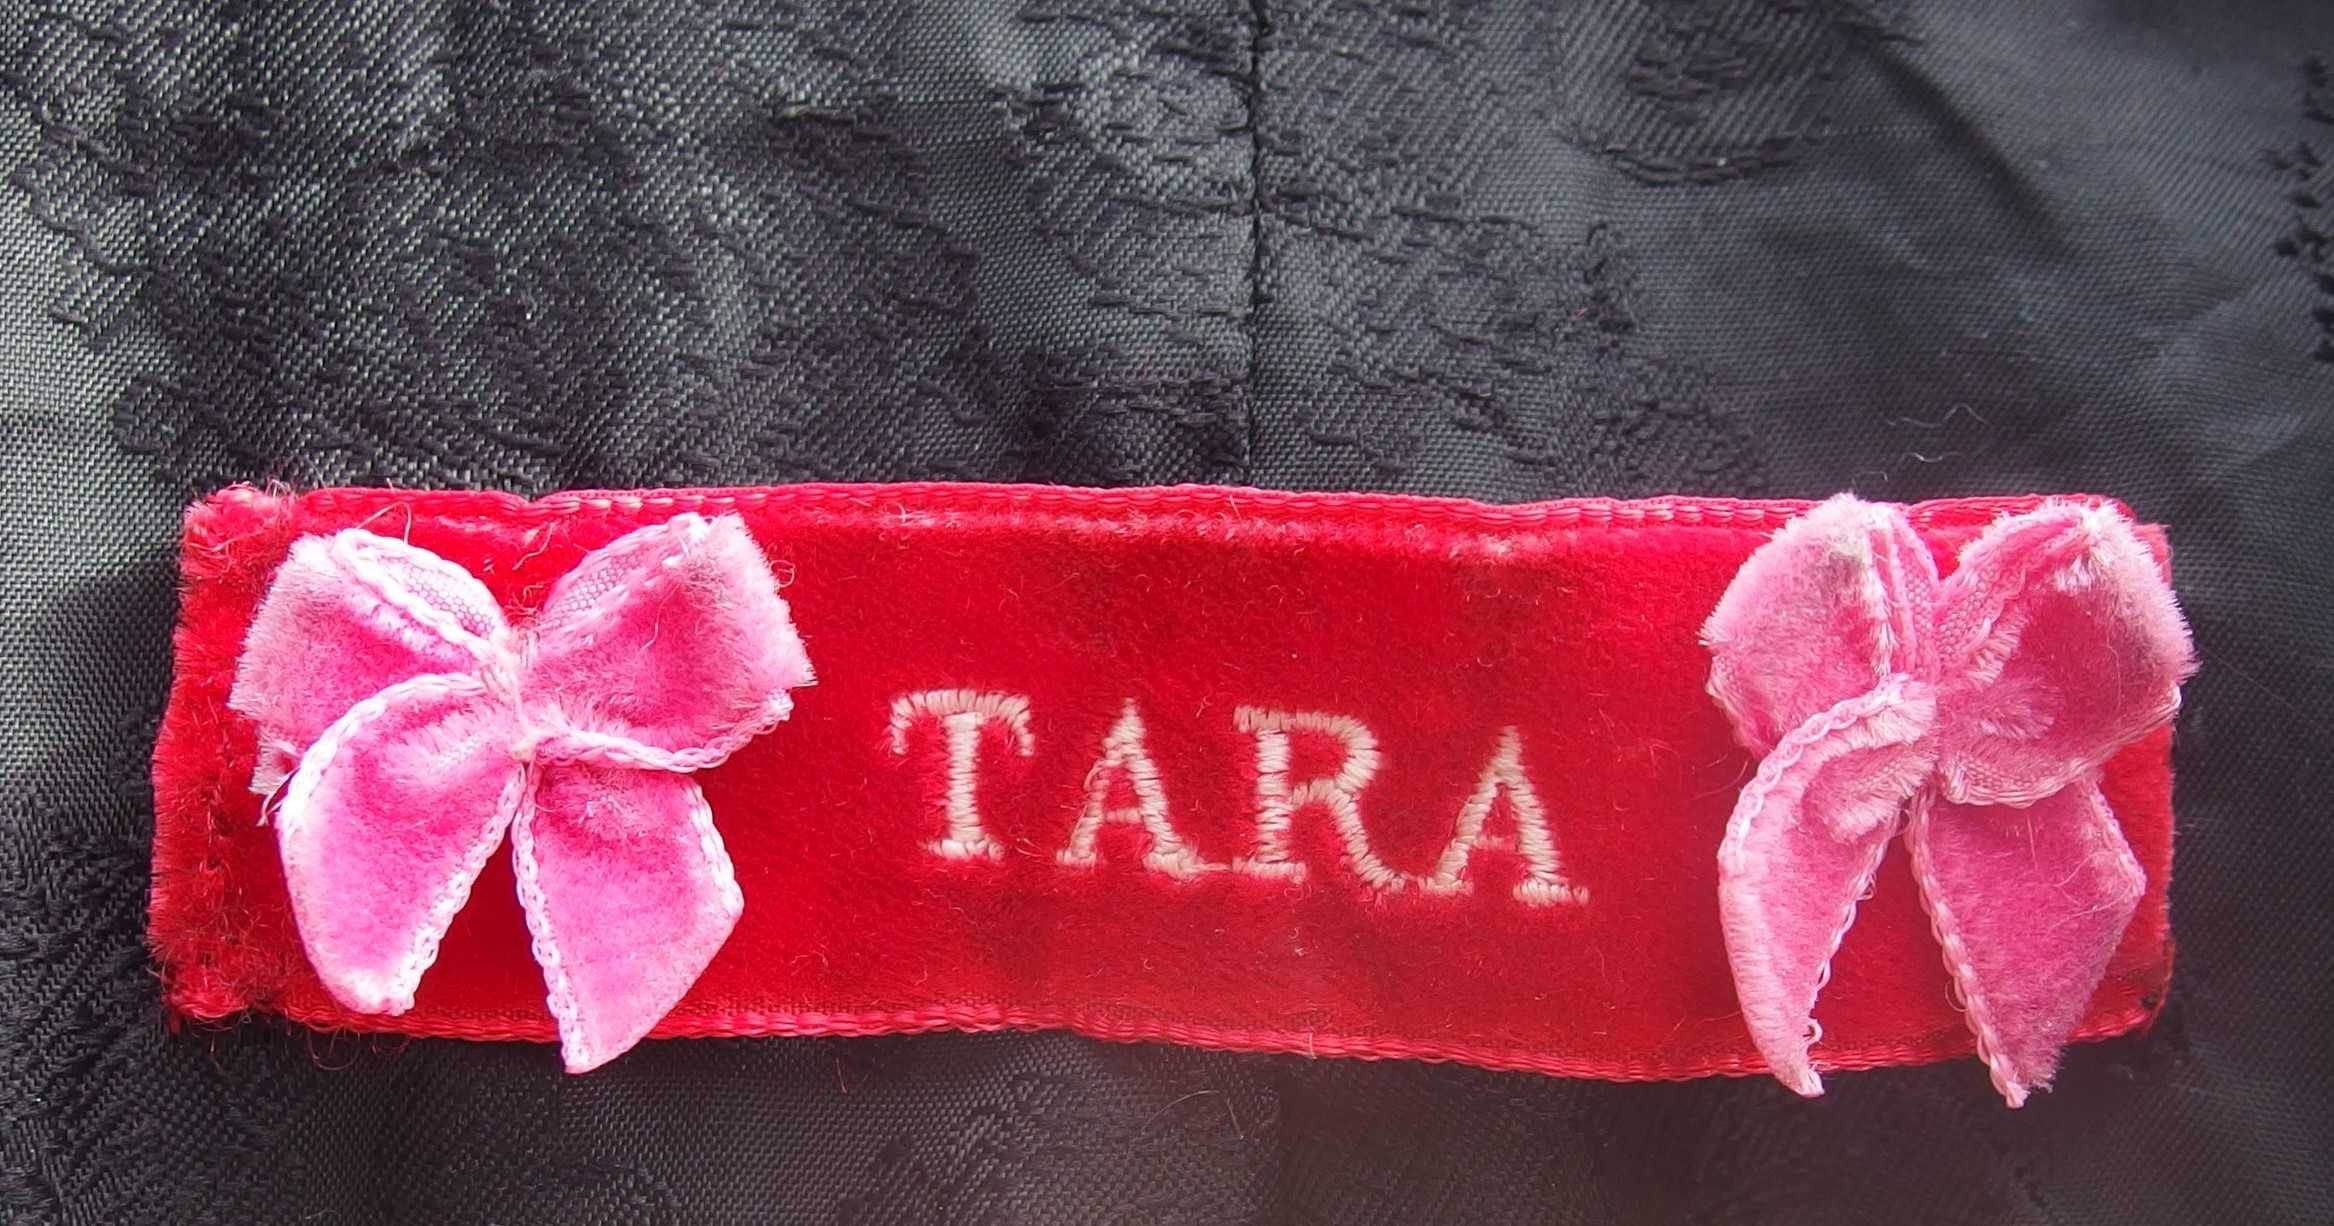 Płaszcz nieistniejącej już marki TARA.